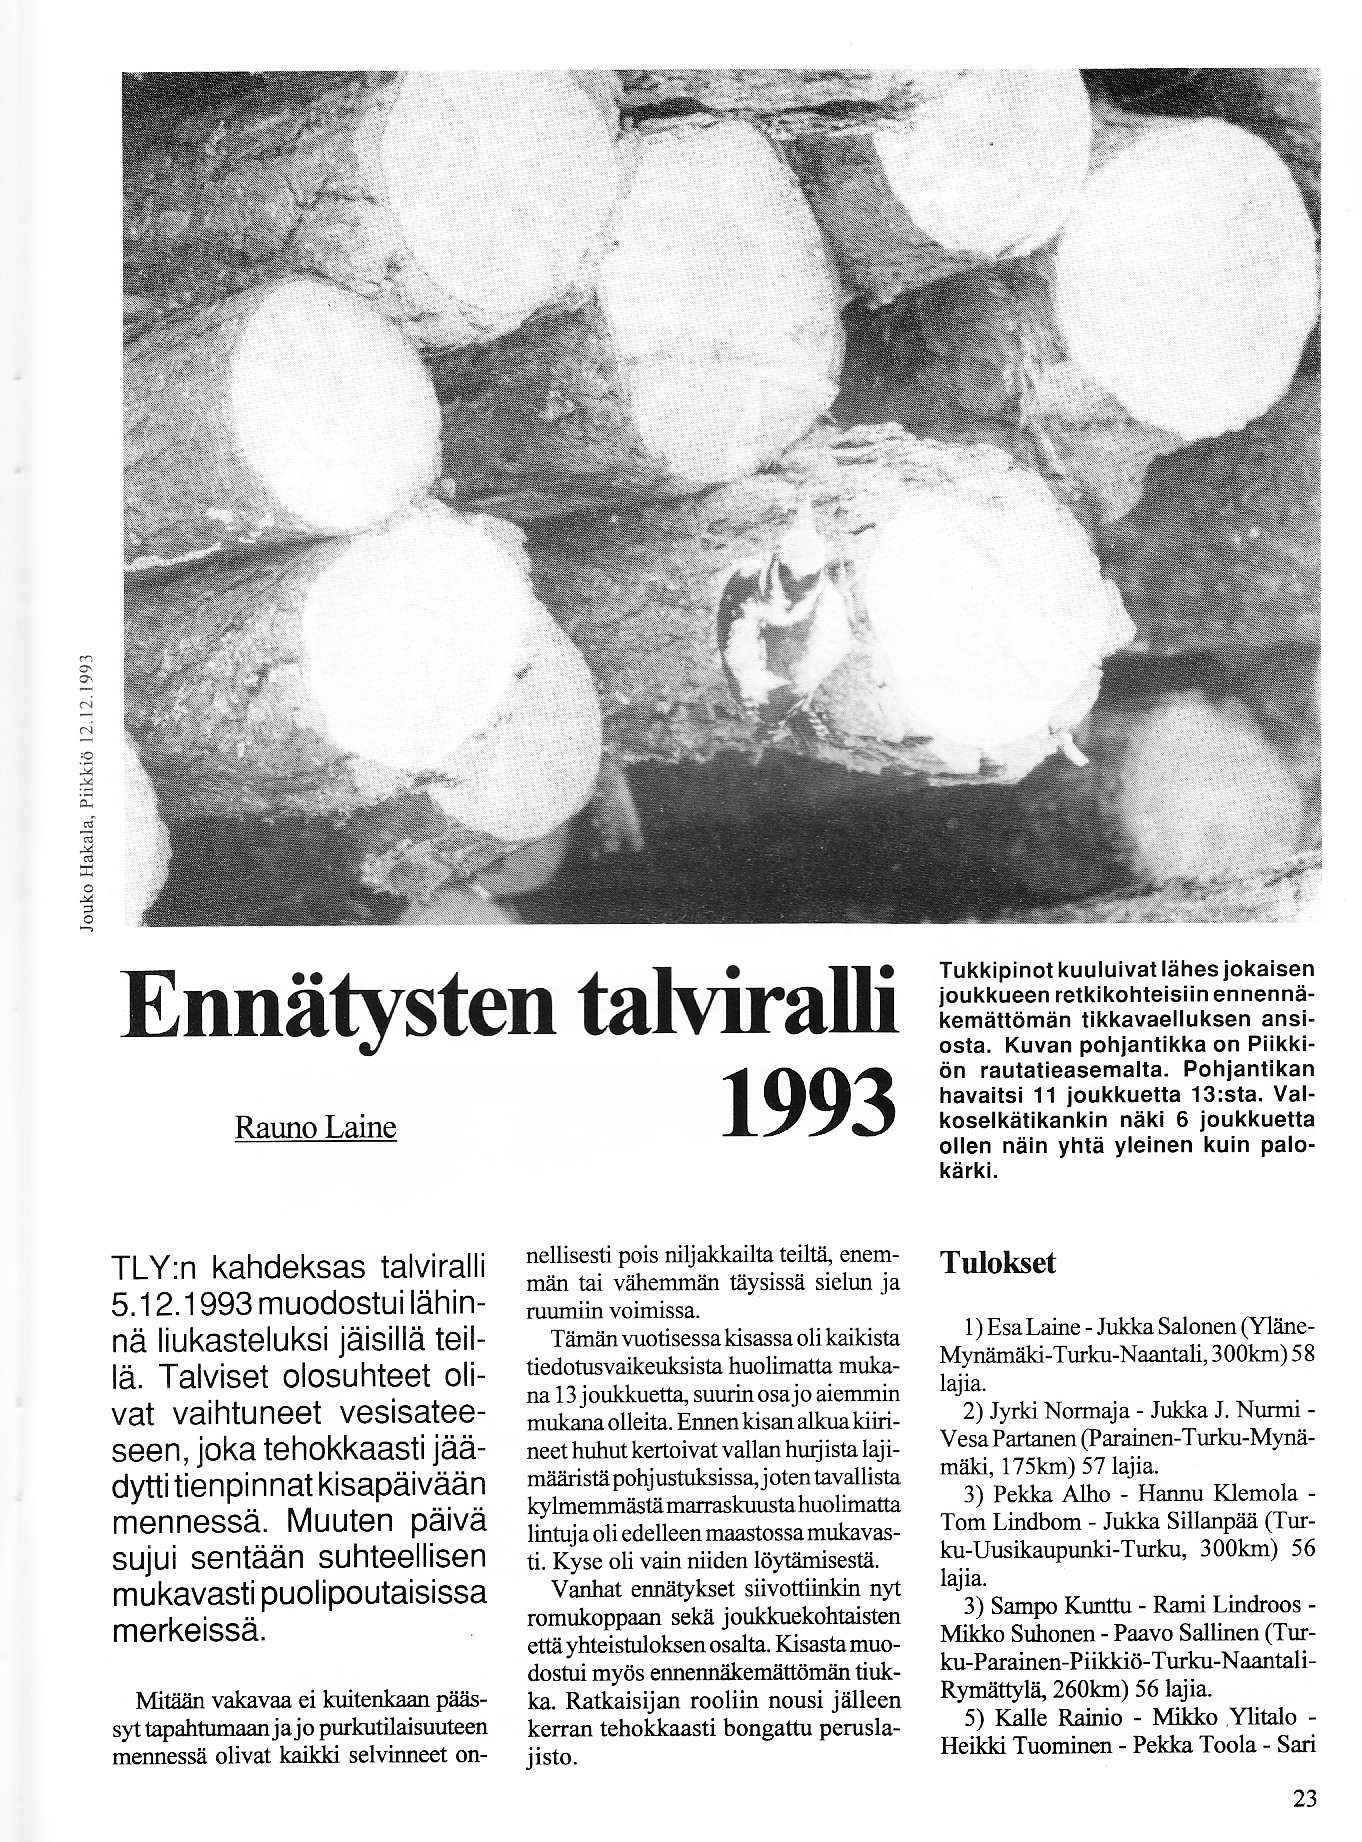 1 : Ennätysten tahiralli Rauno Laine 1993 Tukkipinot kuuluivat lähes jokaisen ioukkueen retkikohteisiin ennennäkemåttömän iikkavaelluksen ansiosta. Kuvan pohiantikka on Piikkiön rautatieasemalta.